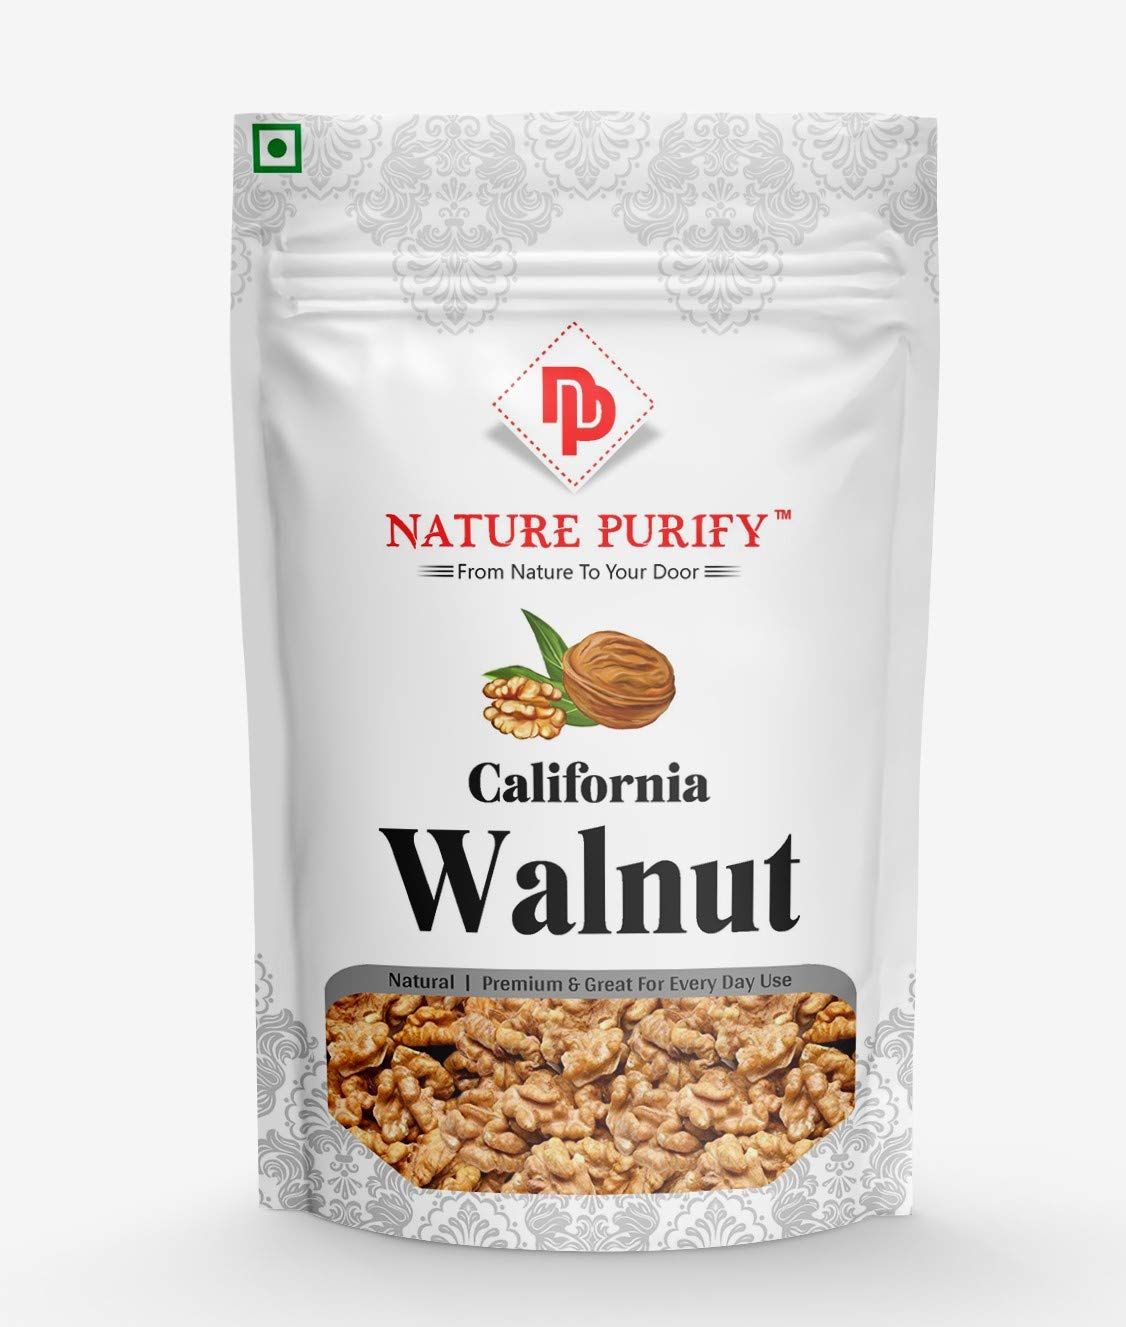 Nature Purify Walnut Without Shell Image